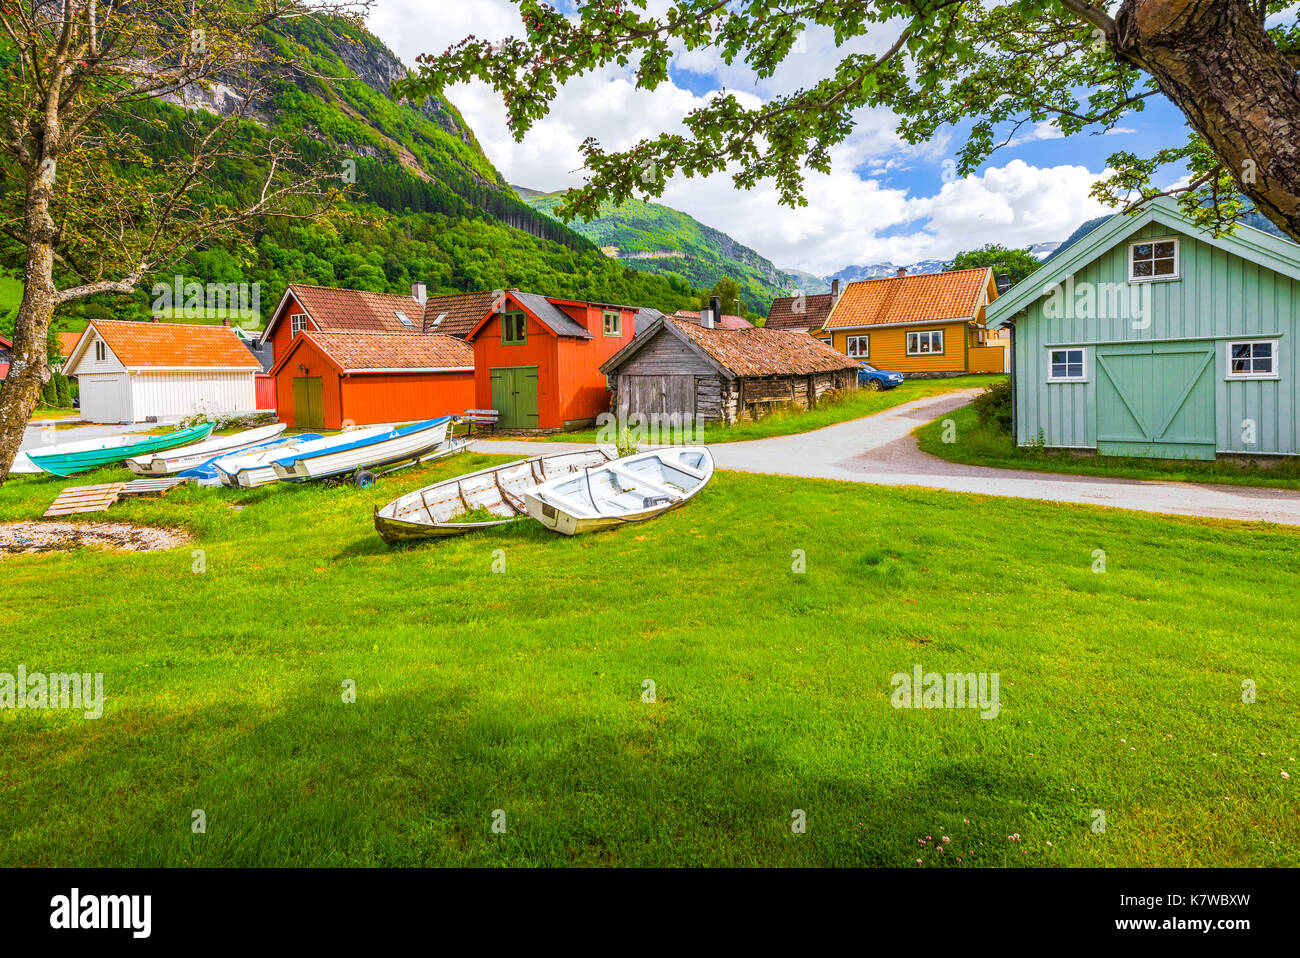 Vikori sur le le Sognefjorden avec maisons en bois et de vieux hangars à bateaux colorés, municipalité de Vik, Norvège, Scandinavie Banque D'Images